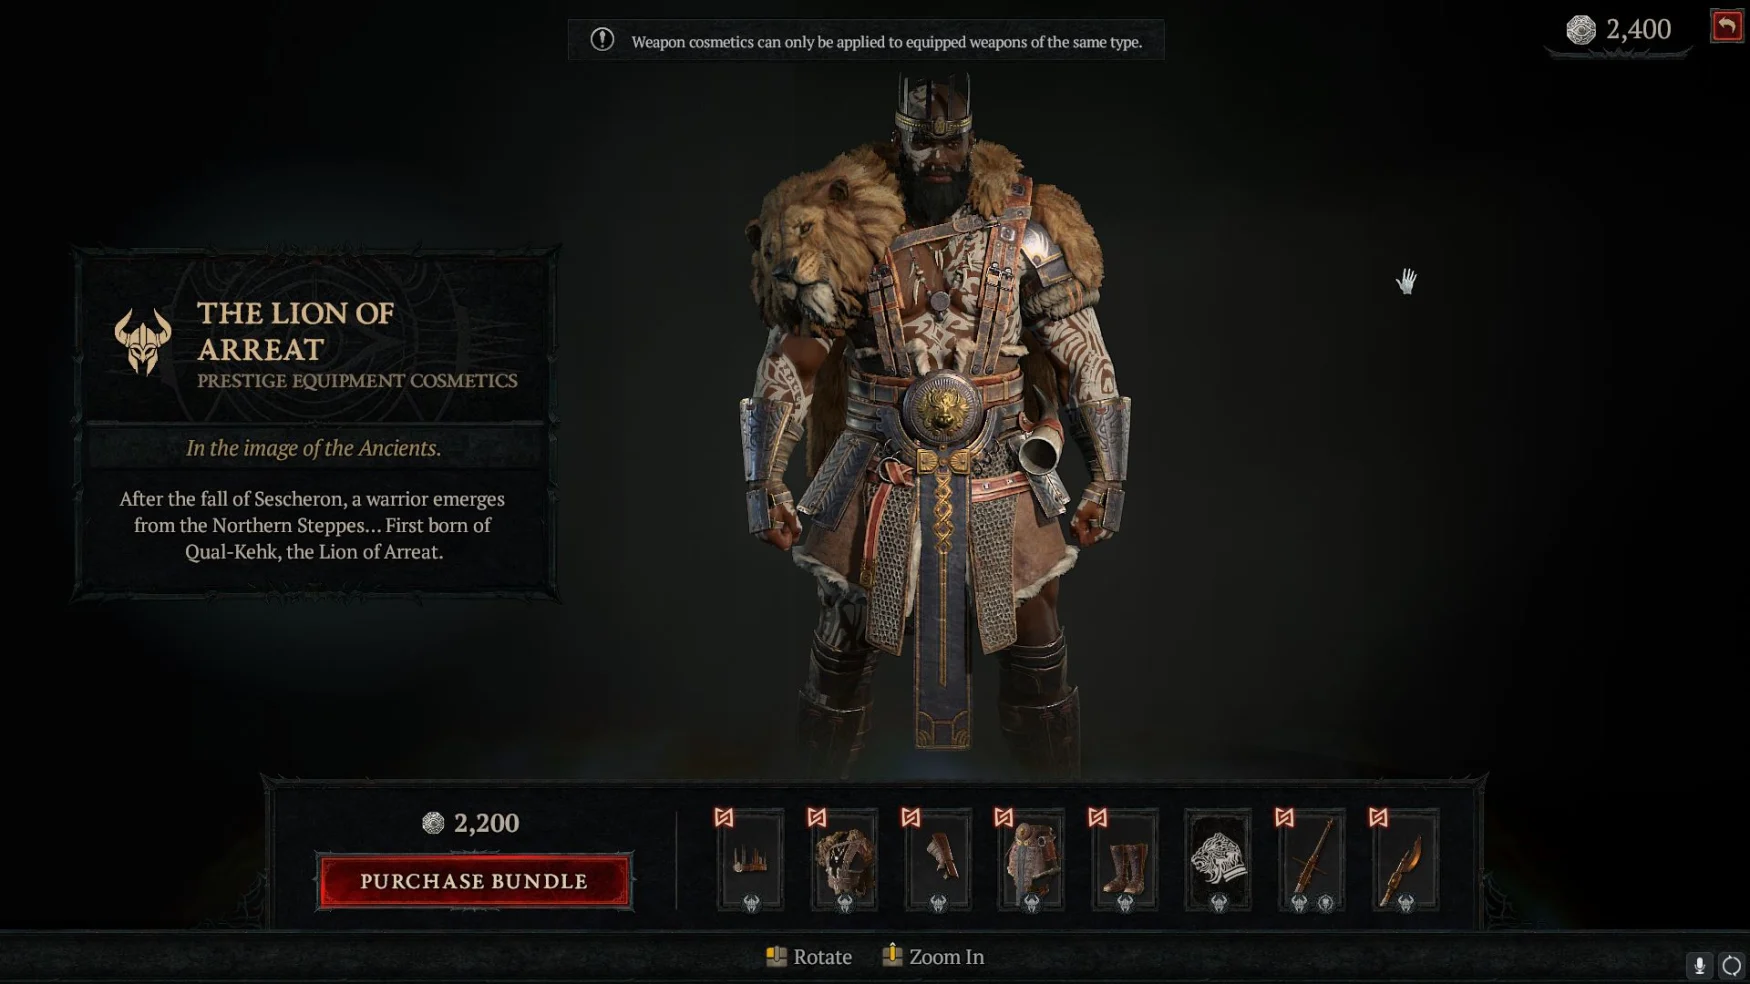 Captura de pantalla de la tienda de Diablo IV, que muestra el conjunto cosmético Lion of Arreat para bárbaros.  